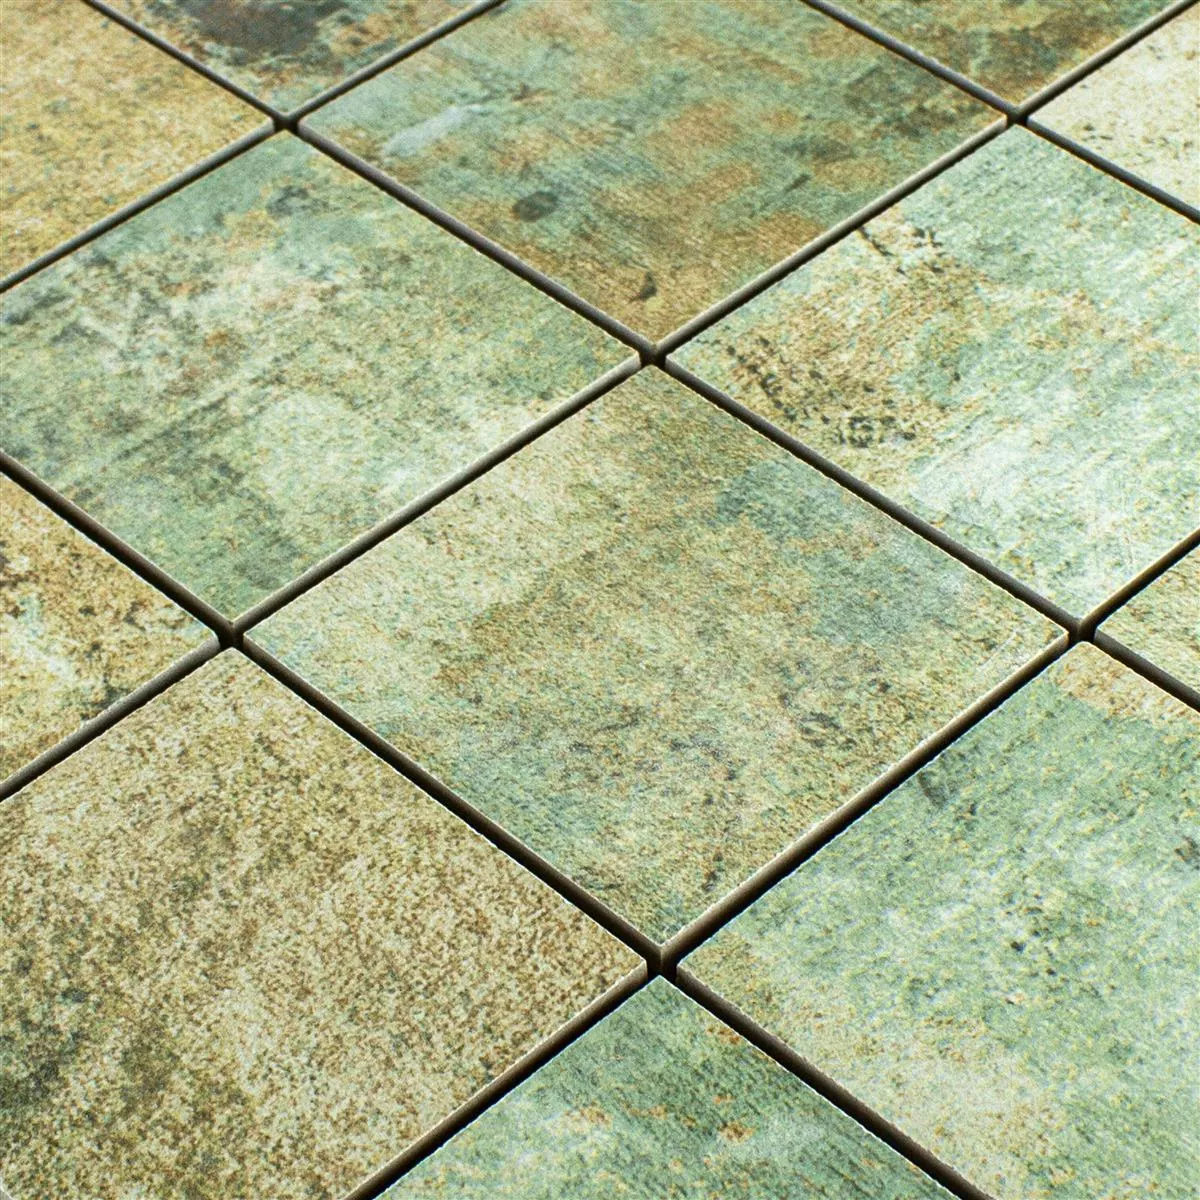 Keramički Mozaik Pločice Moonlight Smeđa Zelena 71x71mm